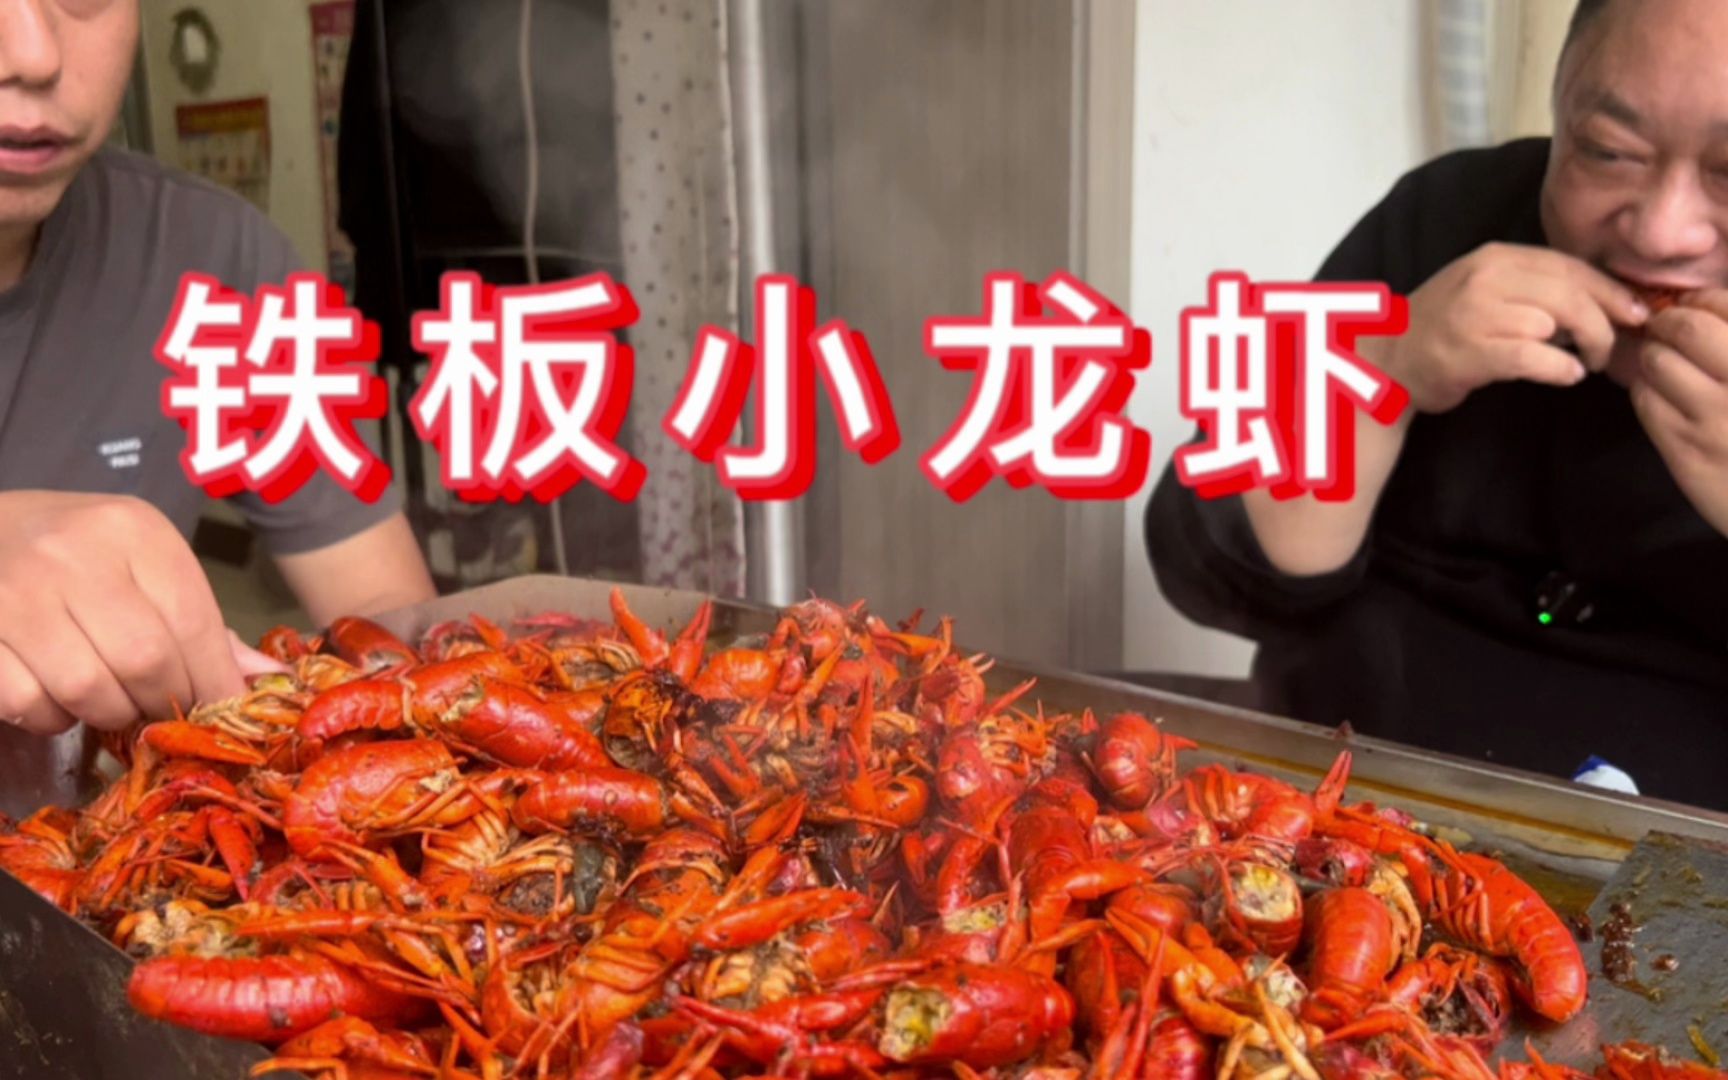 胖龙家准备装修，买13斤小龙虾，做“铁板小龙虾”吃的停不下